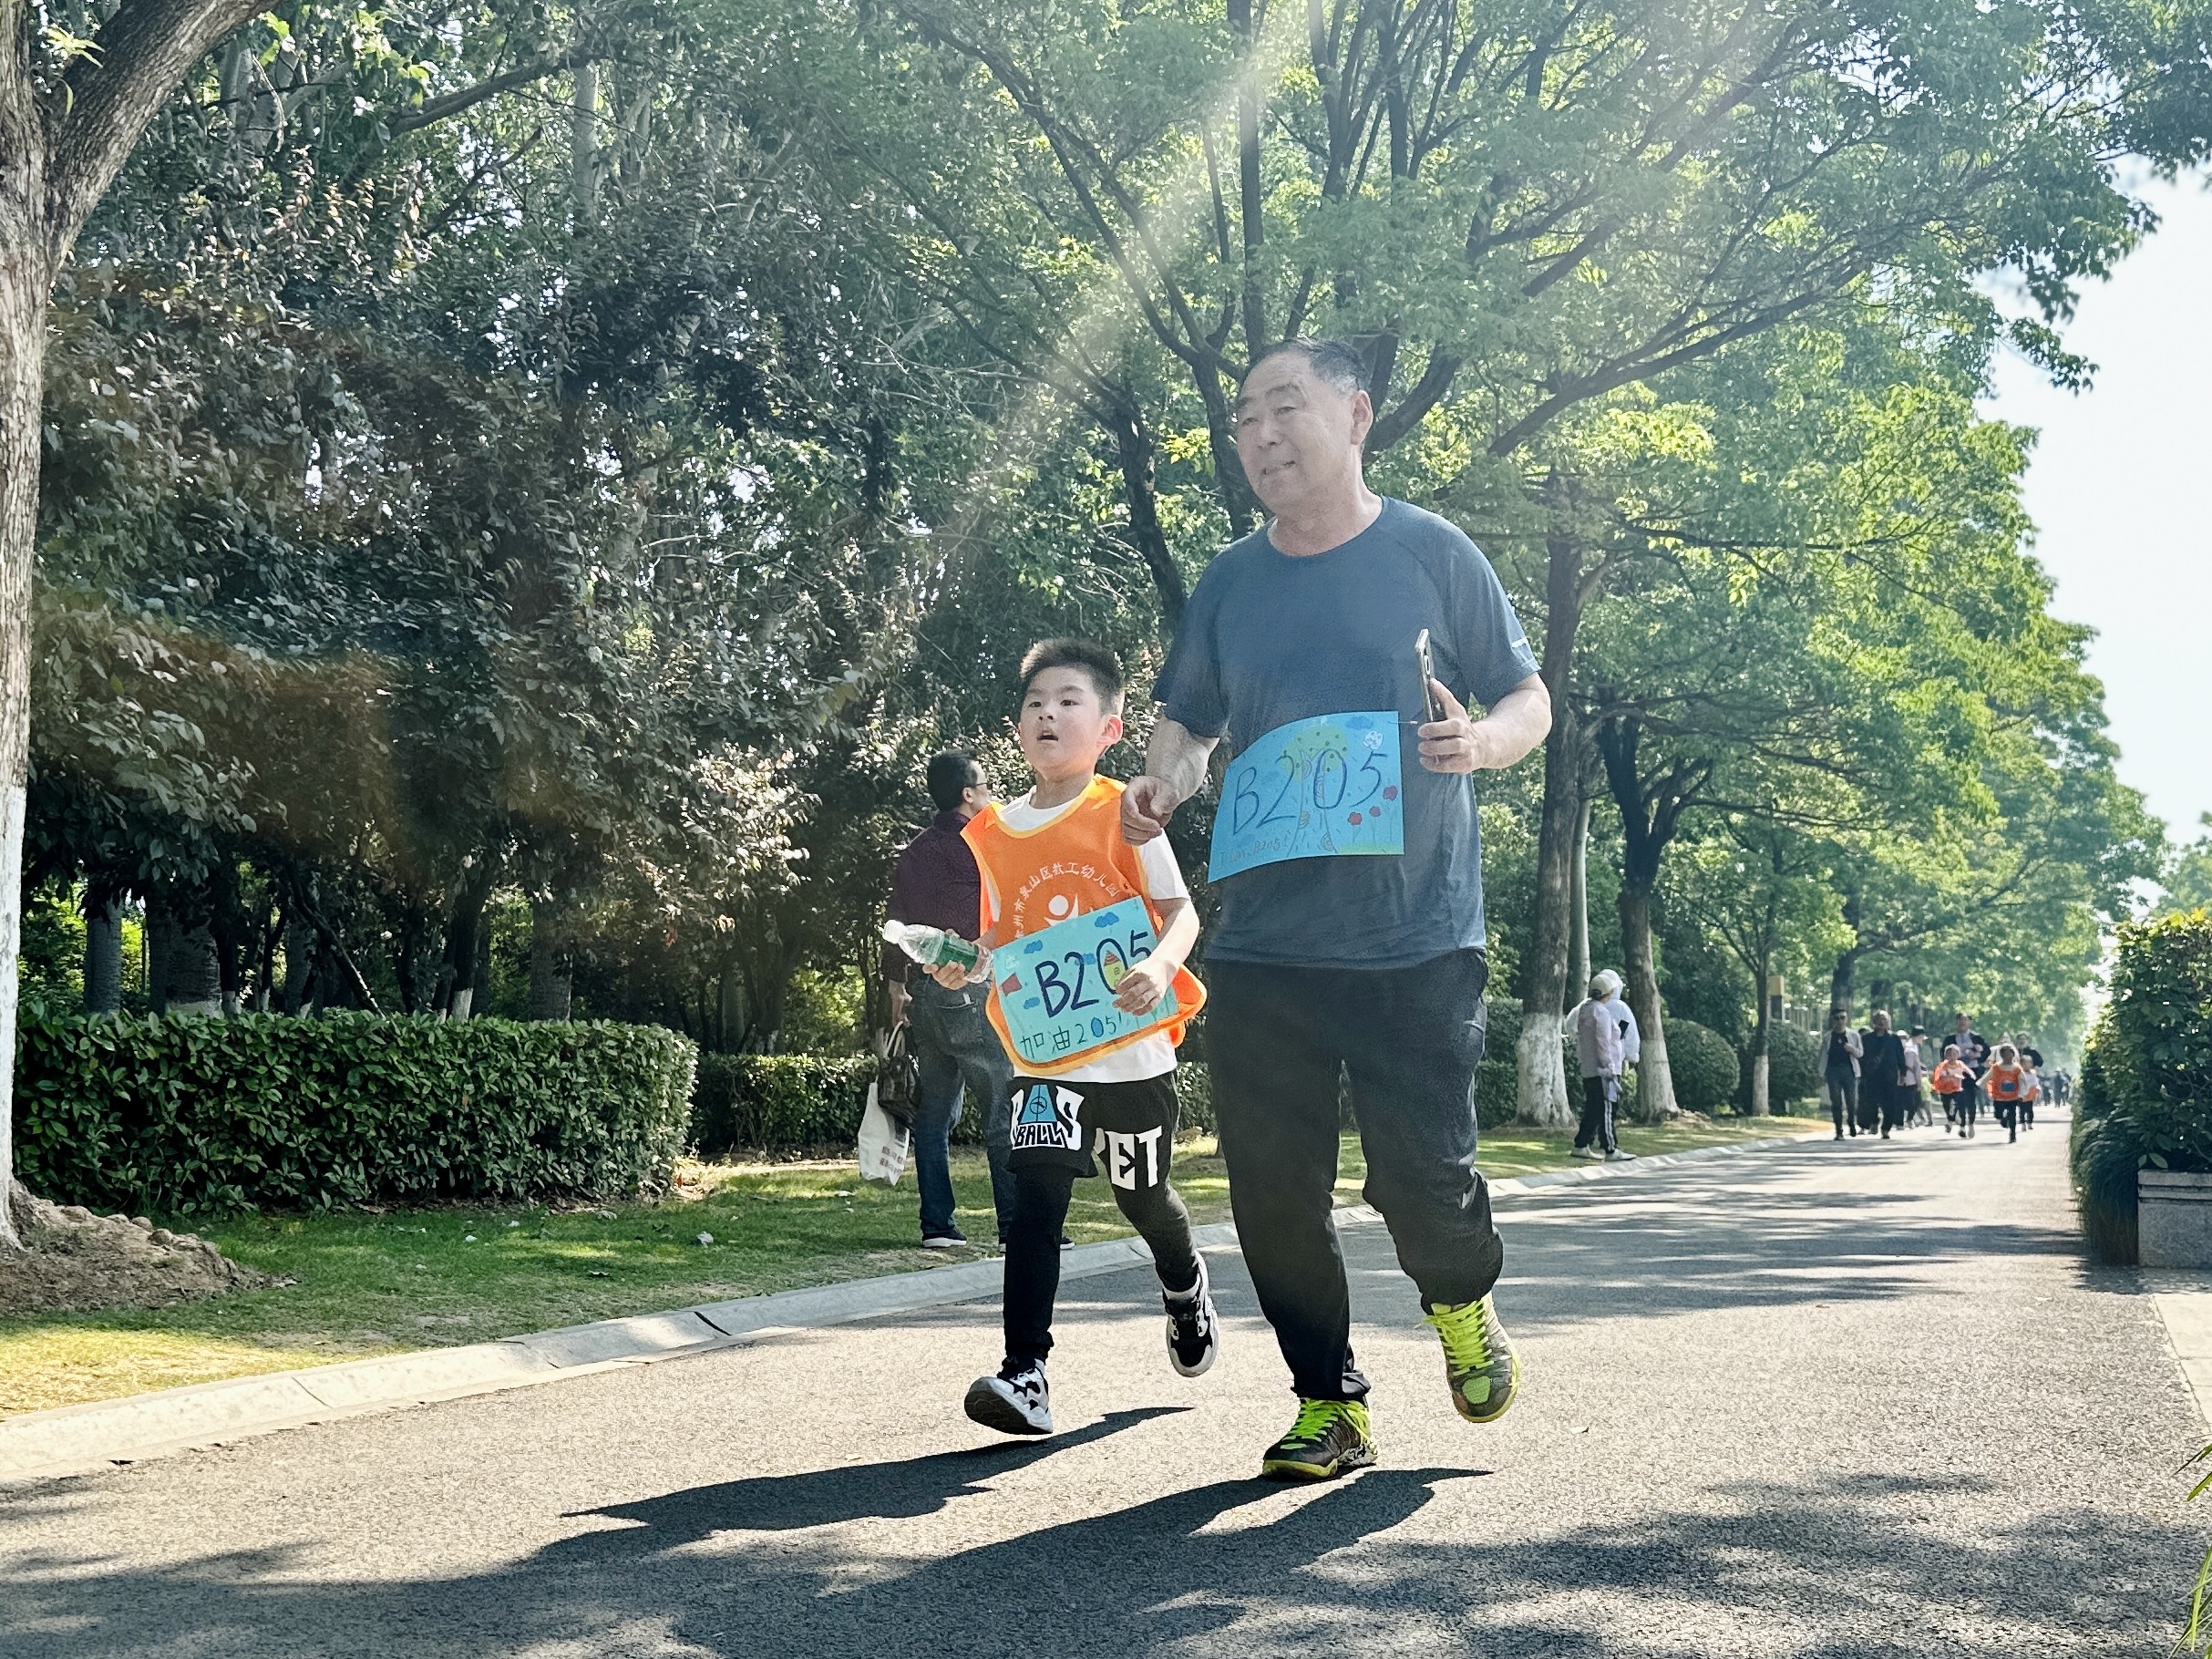 活力出发!徐州泉山区举办教工幼第五届亲子mini马拉松活动